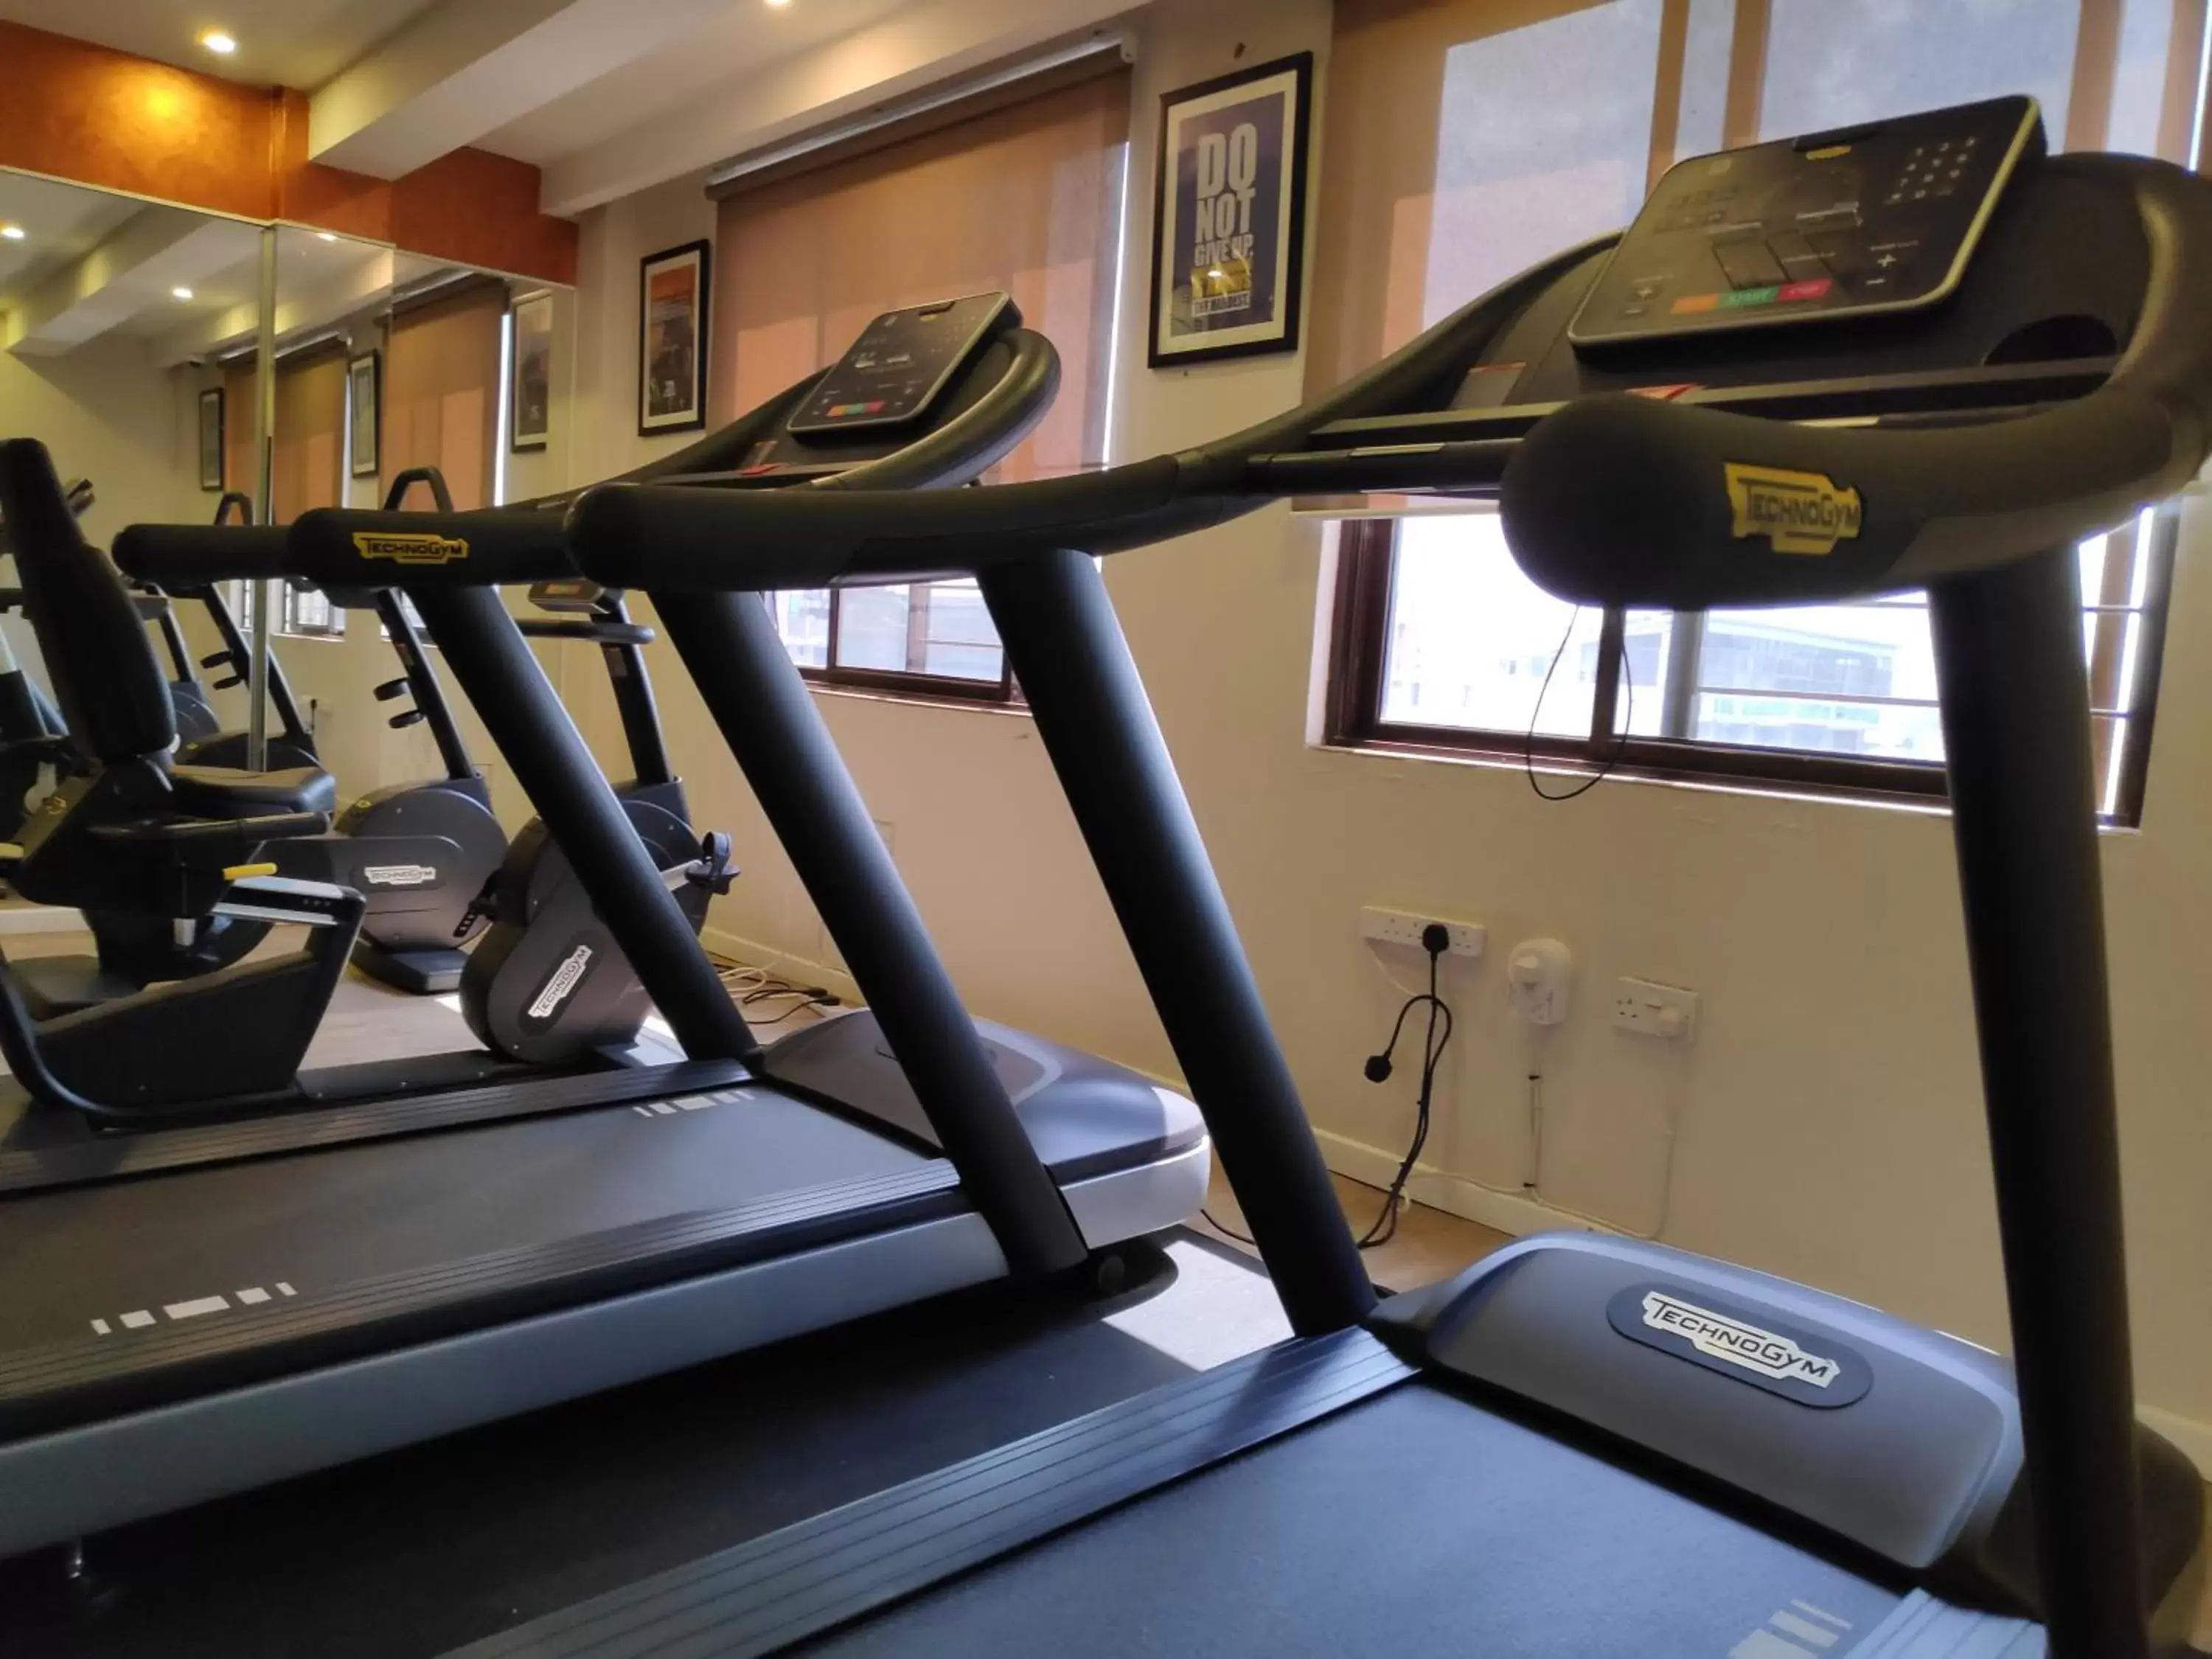 Fitness centre/facilities, Fitness Center/Facilities in Razana Hotel